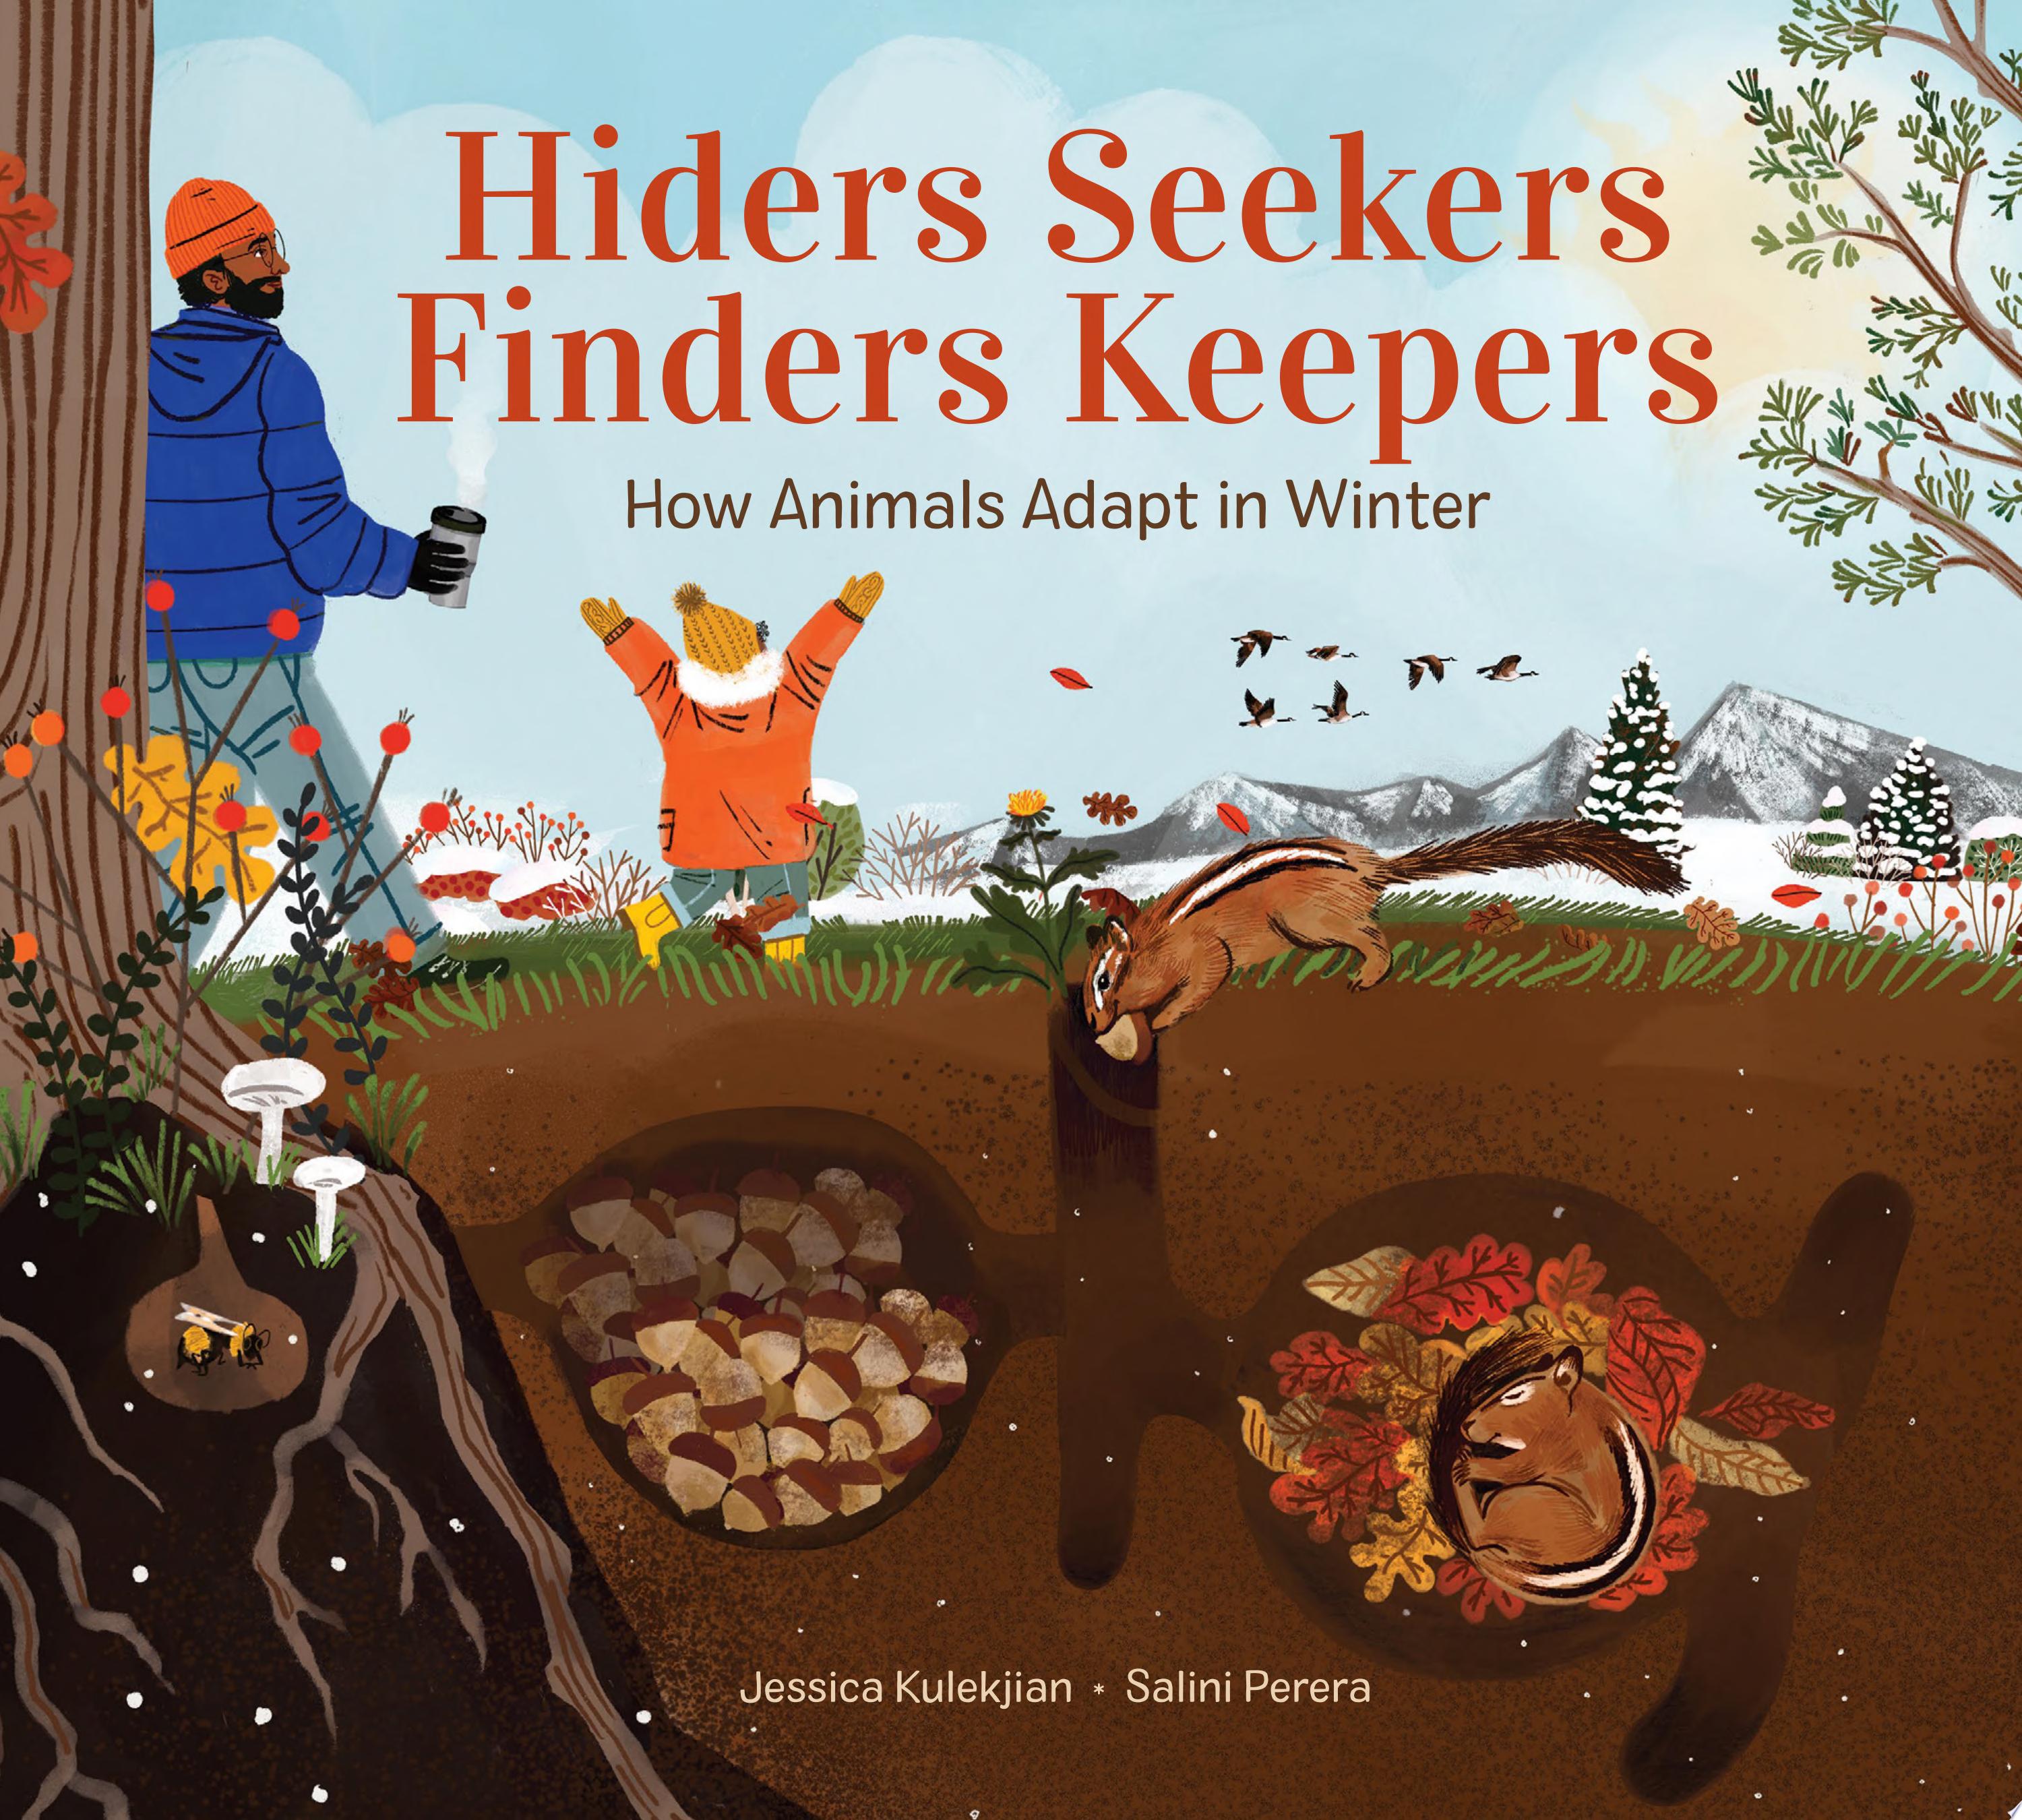 Image for "Hiders Seekers Finders Keepers"